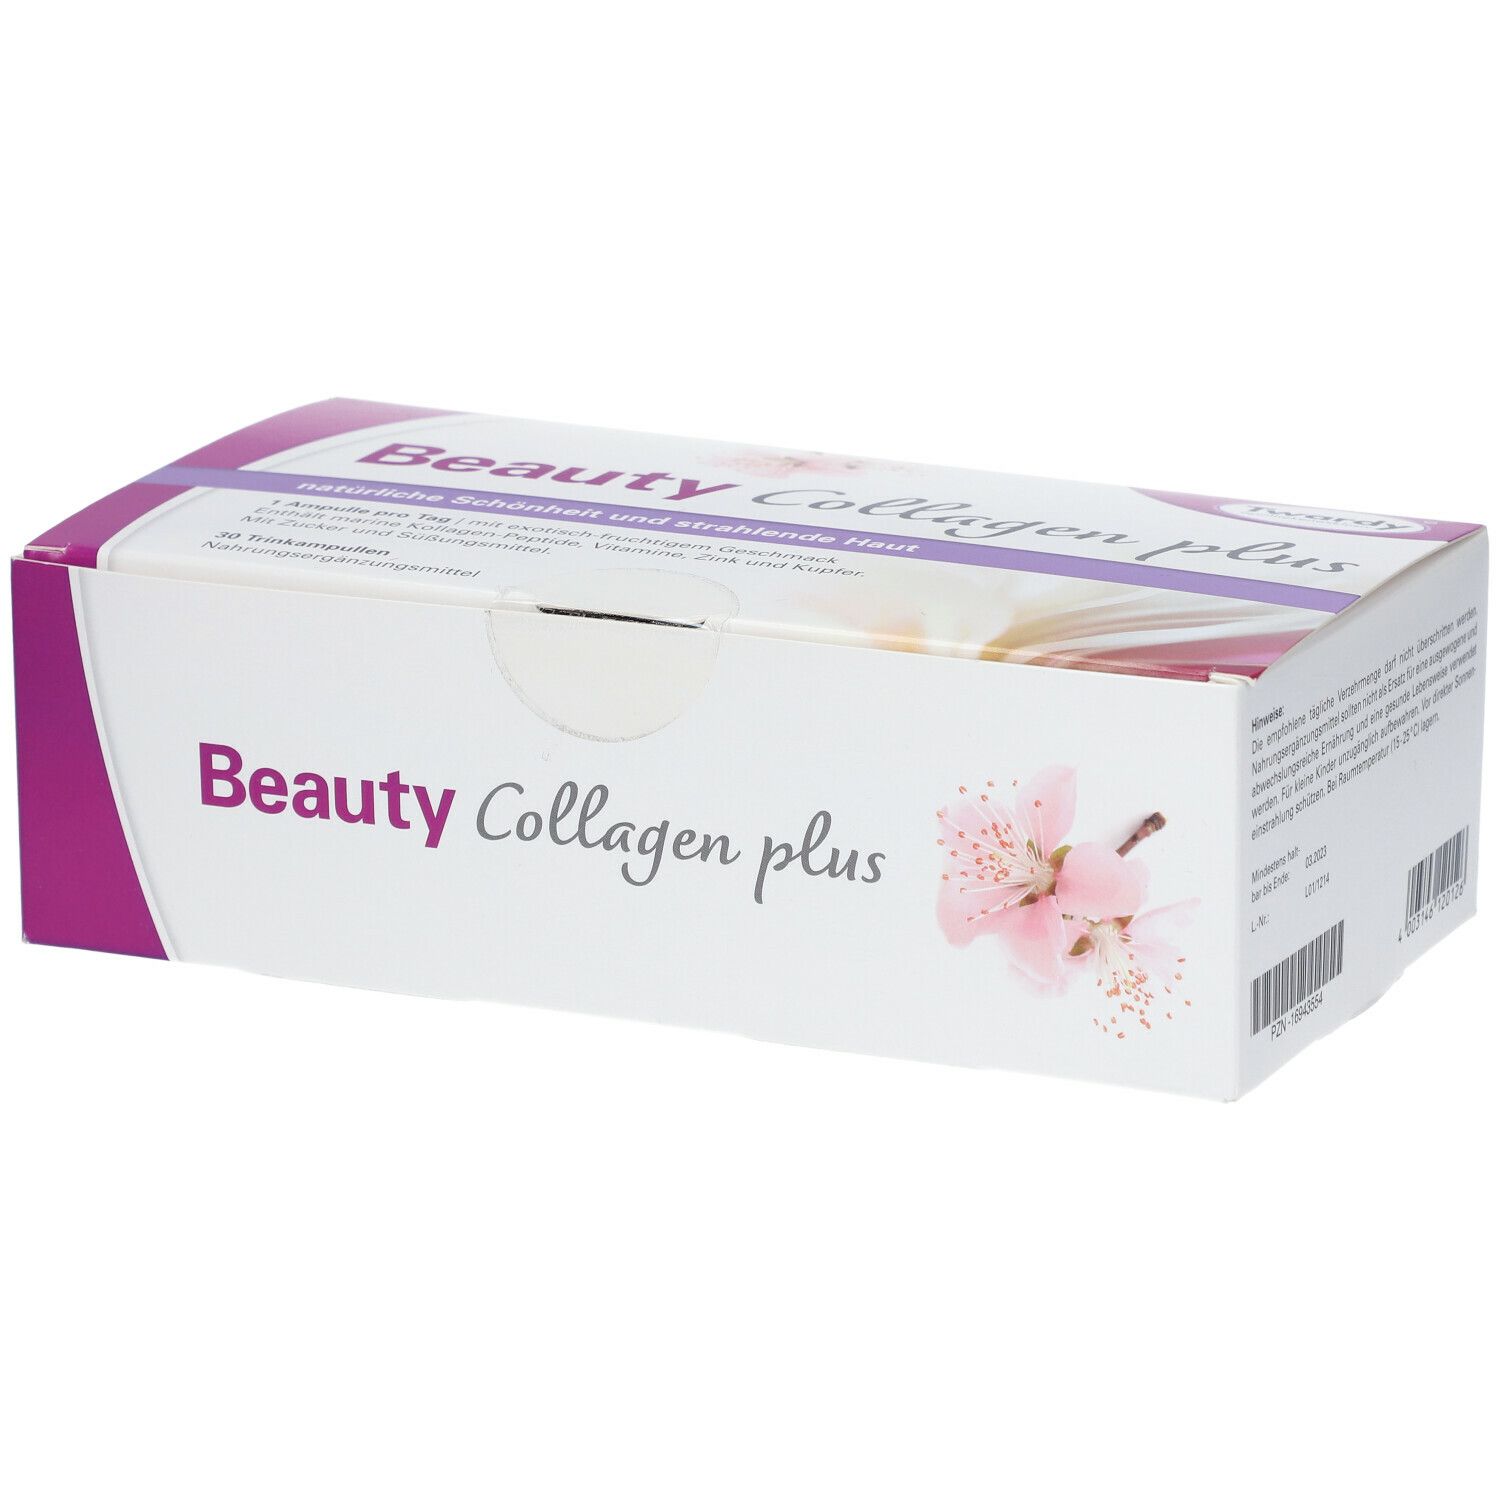 Twardy® Beauty Collagen plus